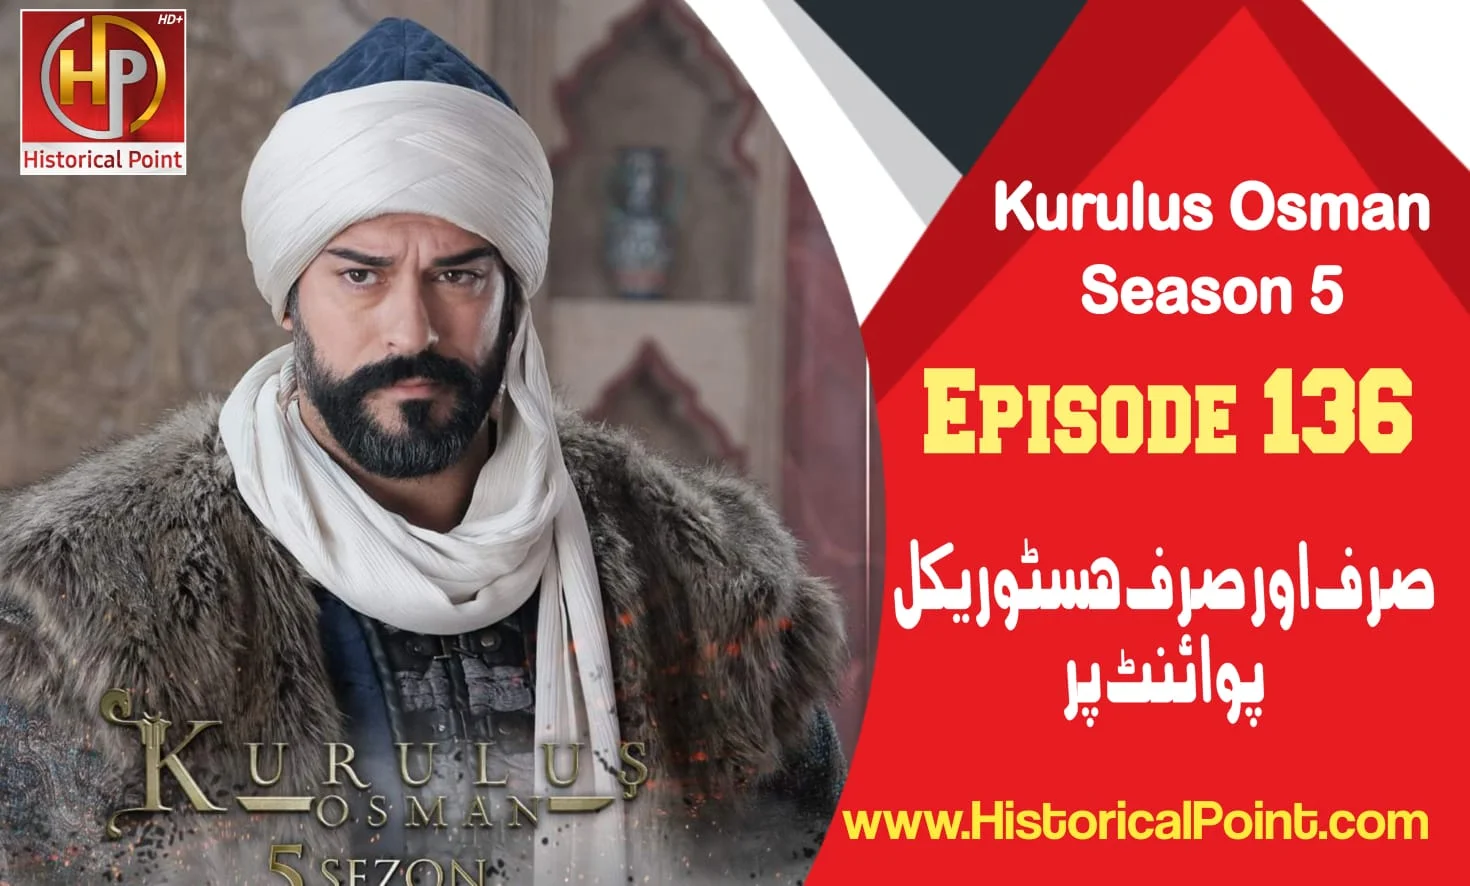 Kurulus Osman Episode 136 in Urdu